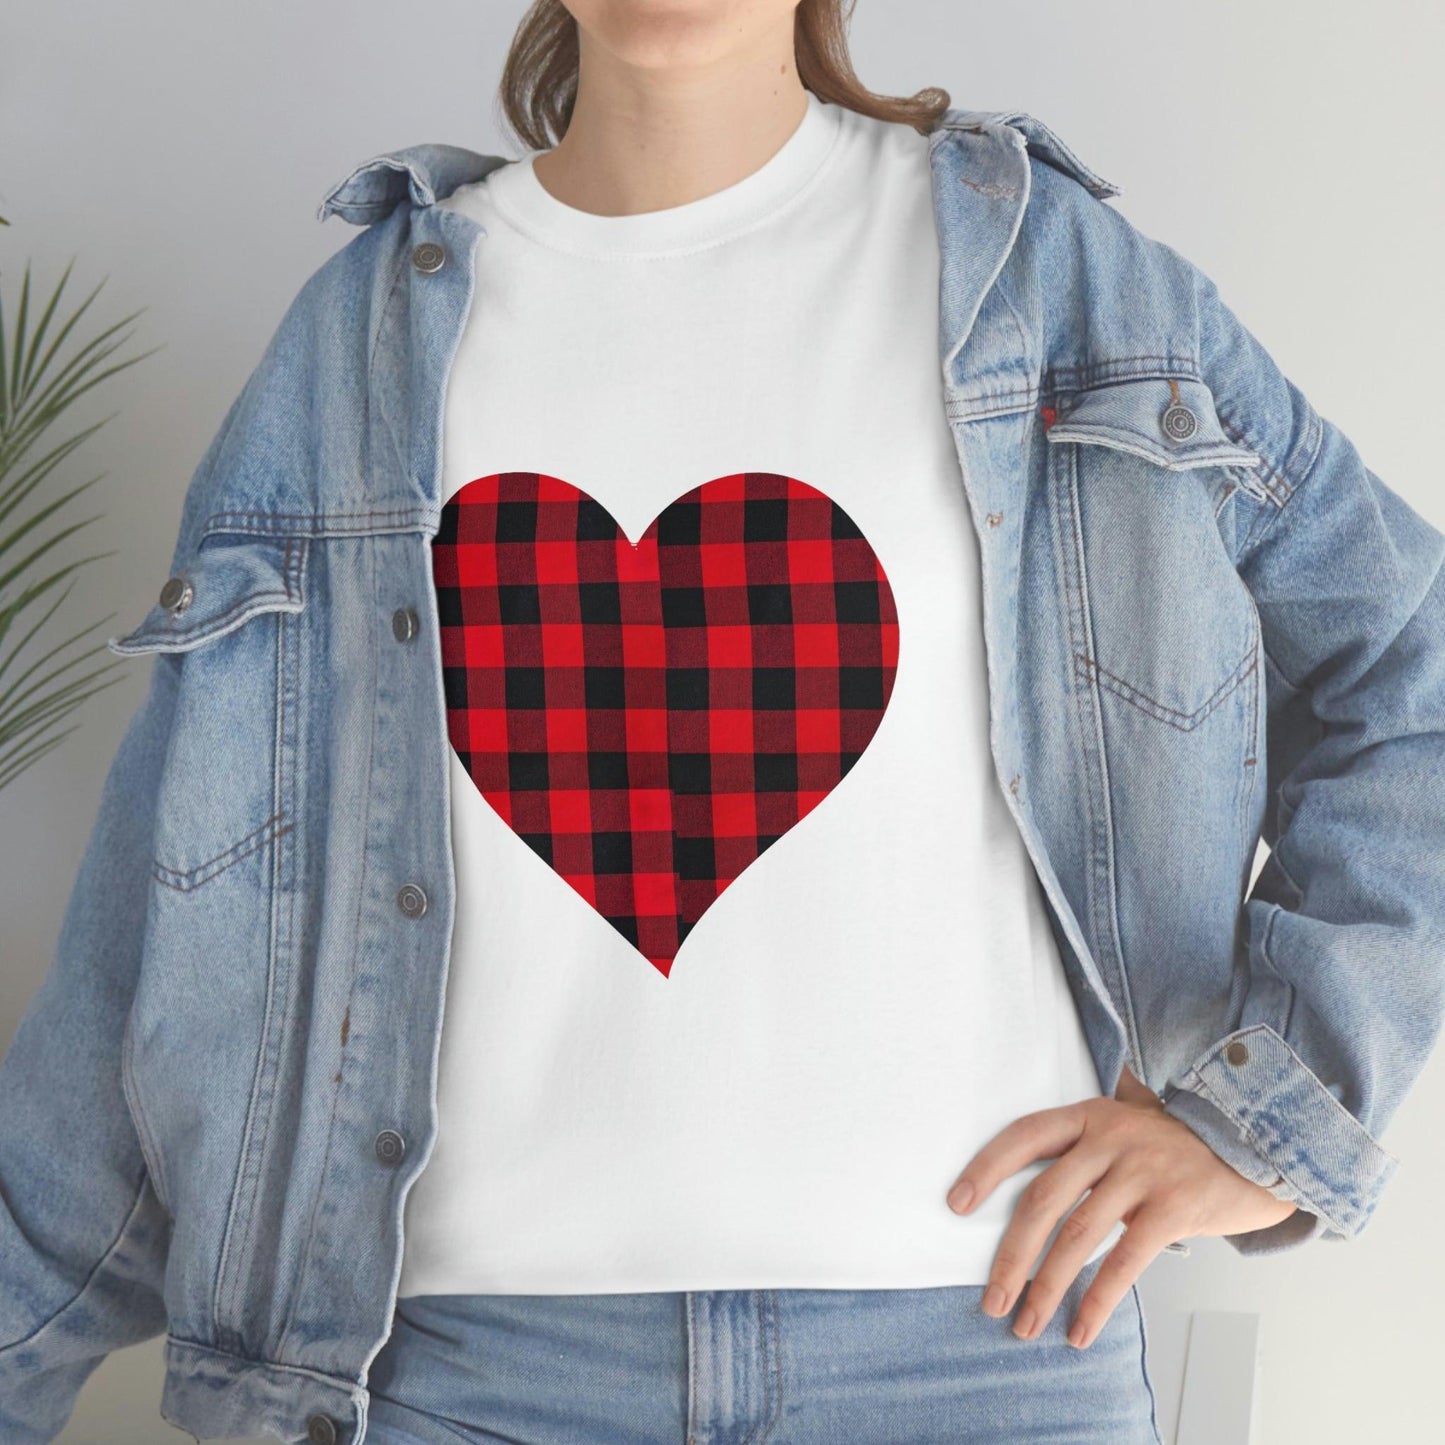 Plaid Heart T-Shirt, - Giftsmojo